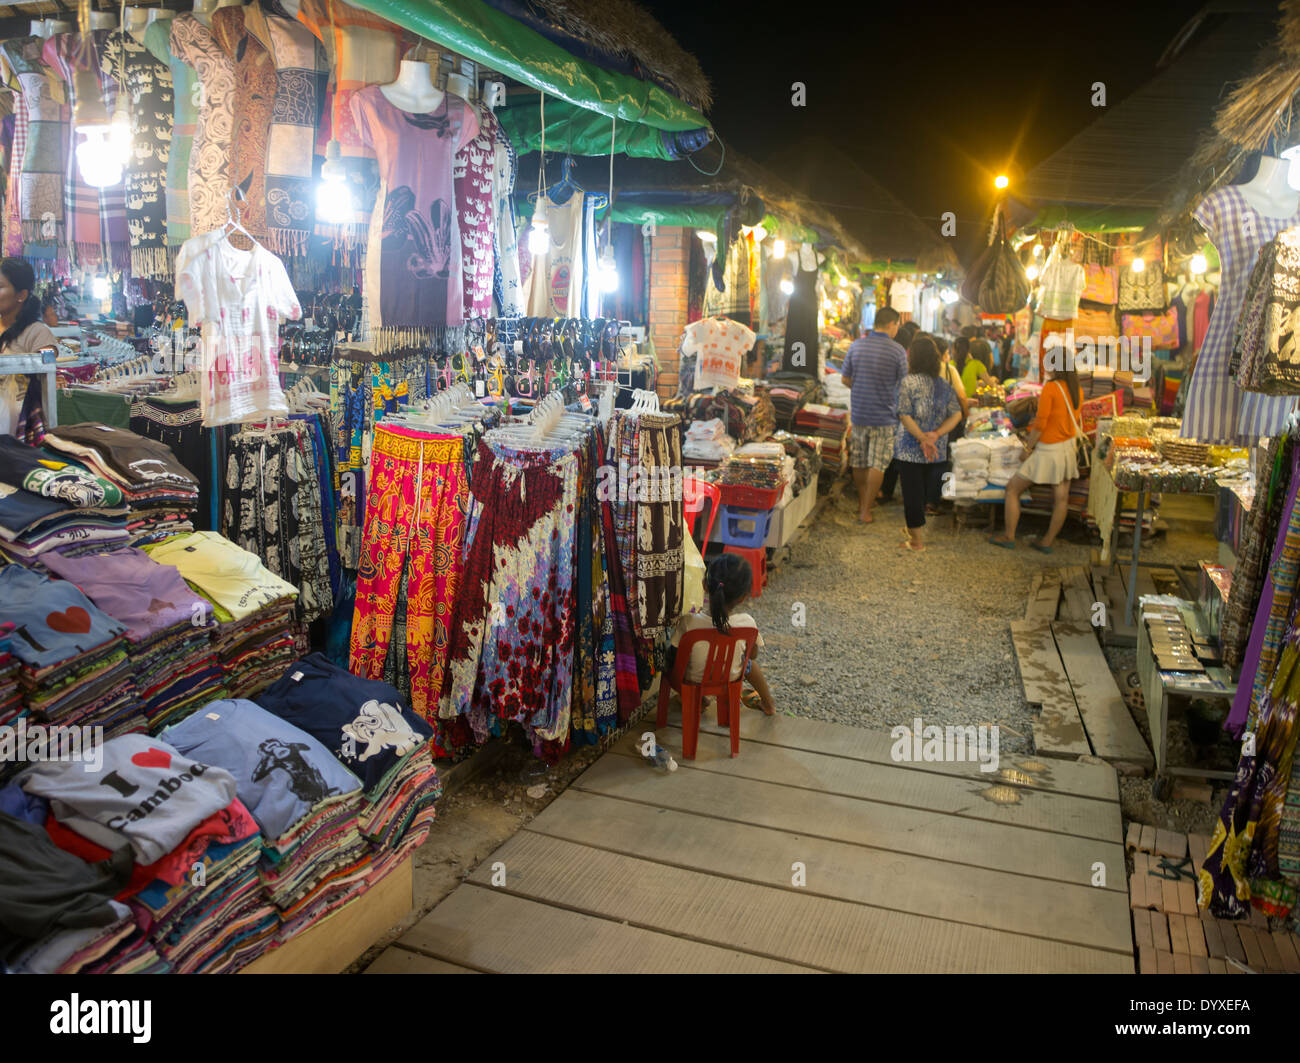 Vêtements et tissus pour la vente au marché nocturne d'Angkor, Siem Reap, Cambodge Banque D'Images